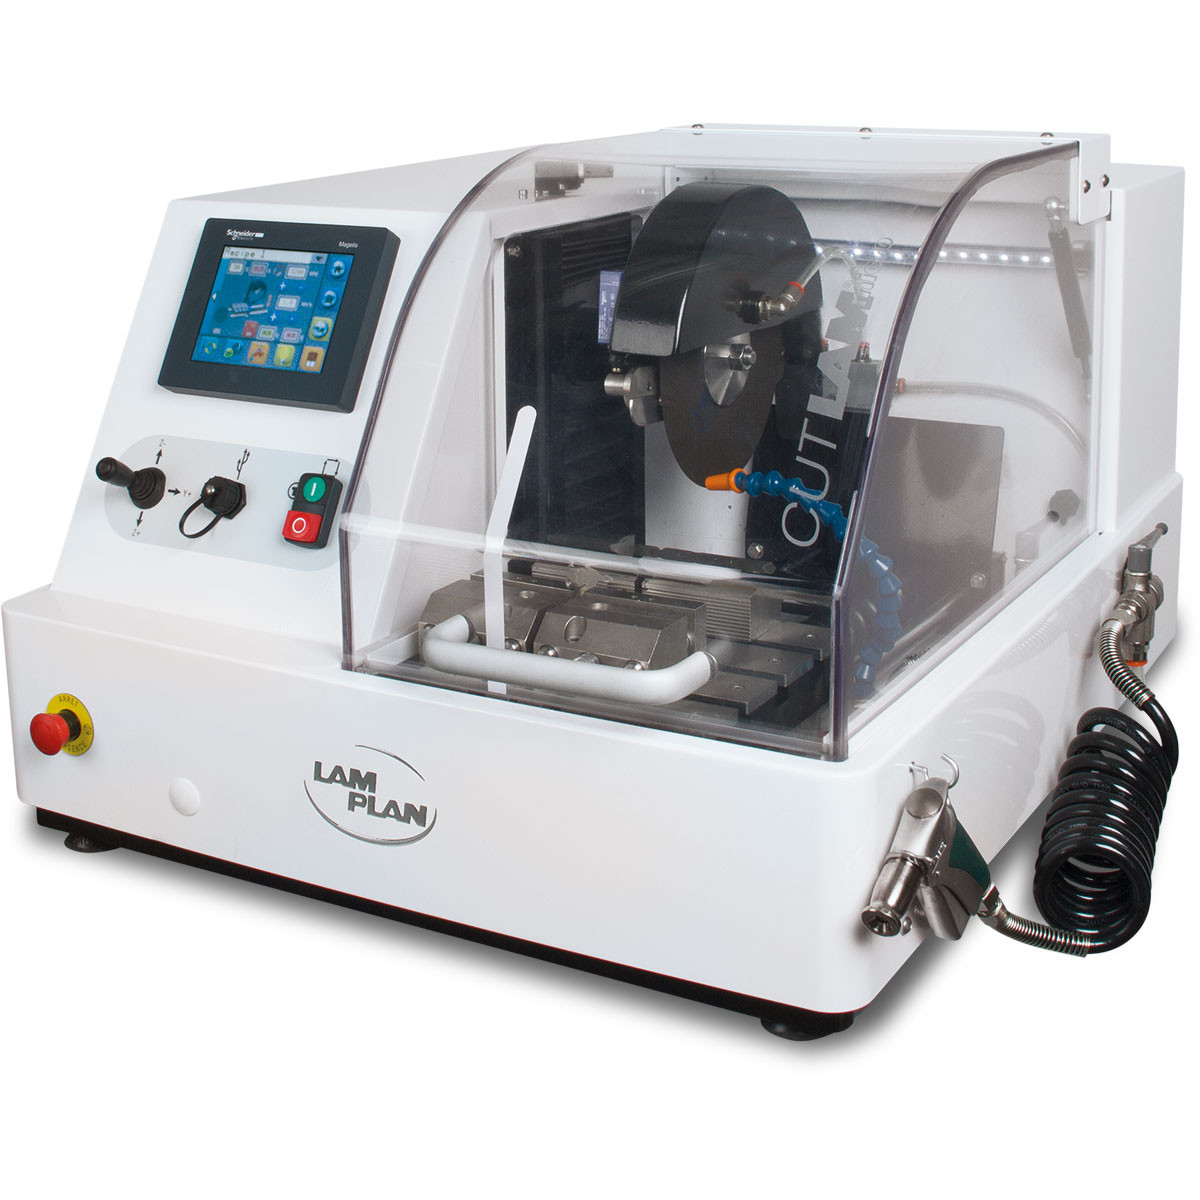 เครื่องตัดละเอียดสำหรับห้องปฏิบัติการ (High Precision Automatic 2 axis Cutting Machine) ยี่ห้อ Lam Plan รุ่น CUTLAM micro®3.0 (SIT188)